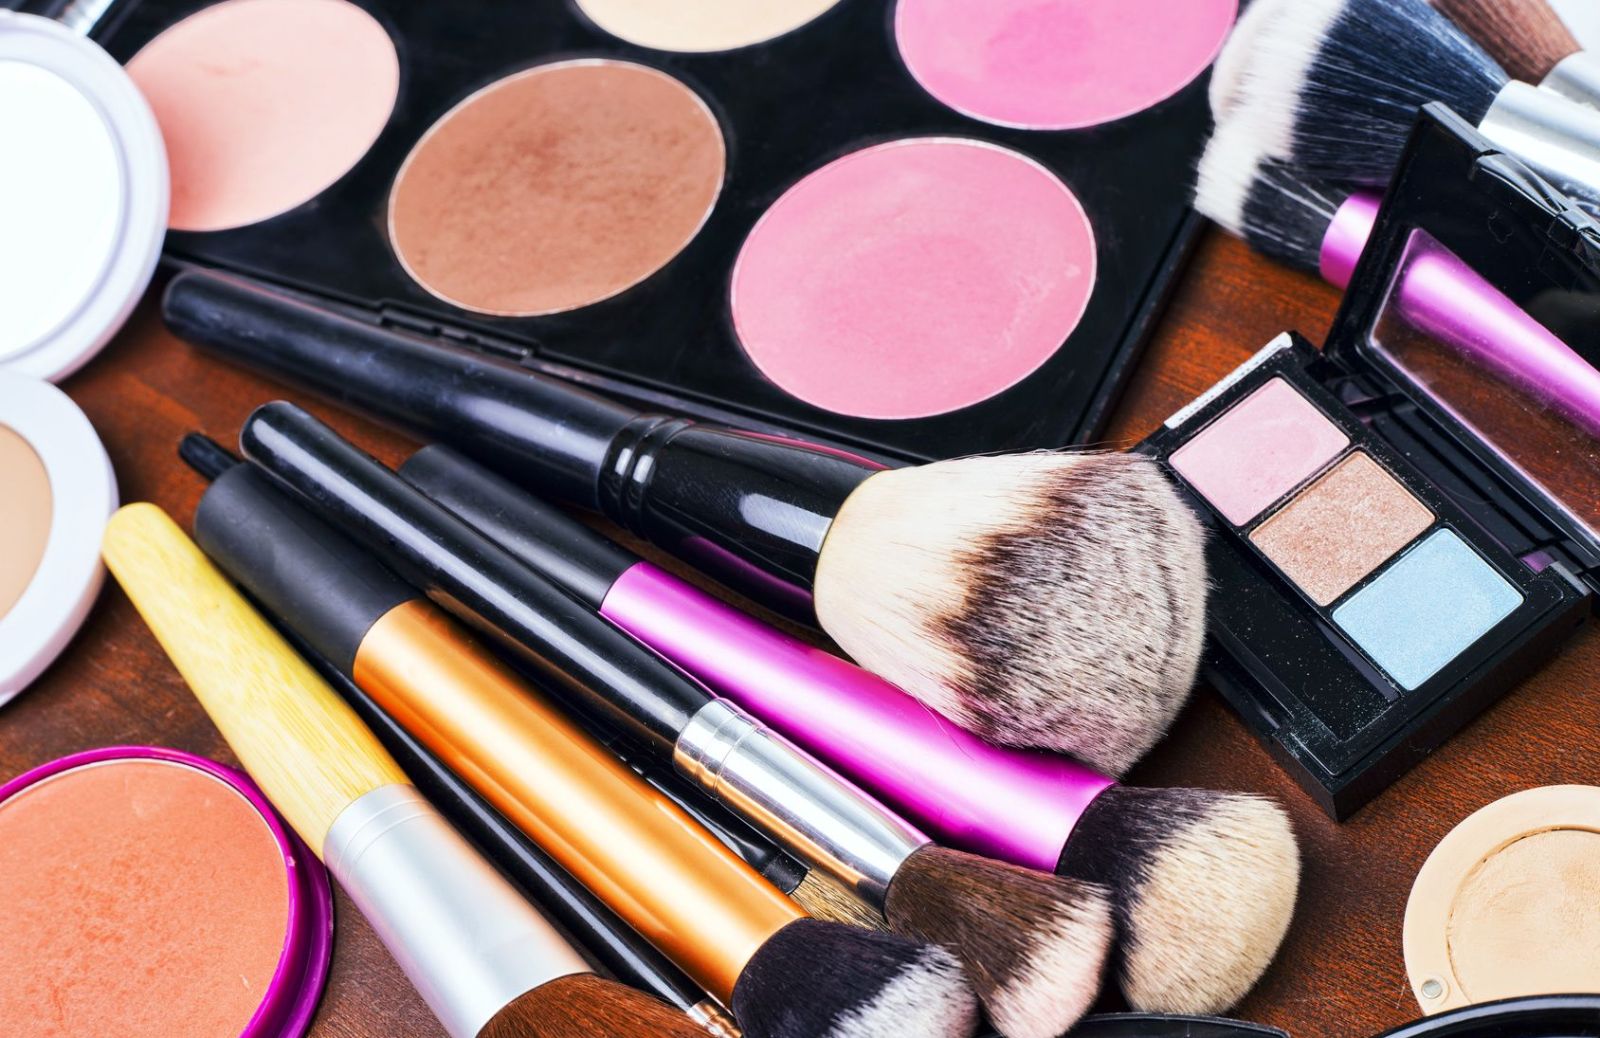 Come organizzare i trucchi: idee per un make up più ordinato